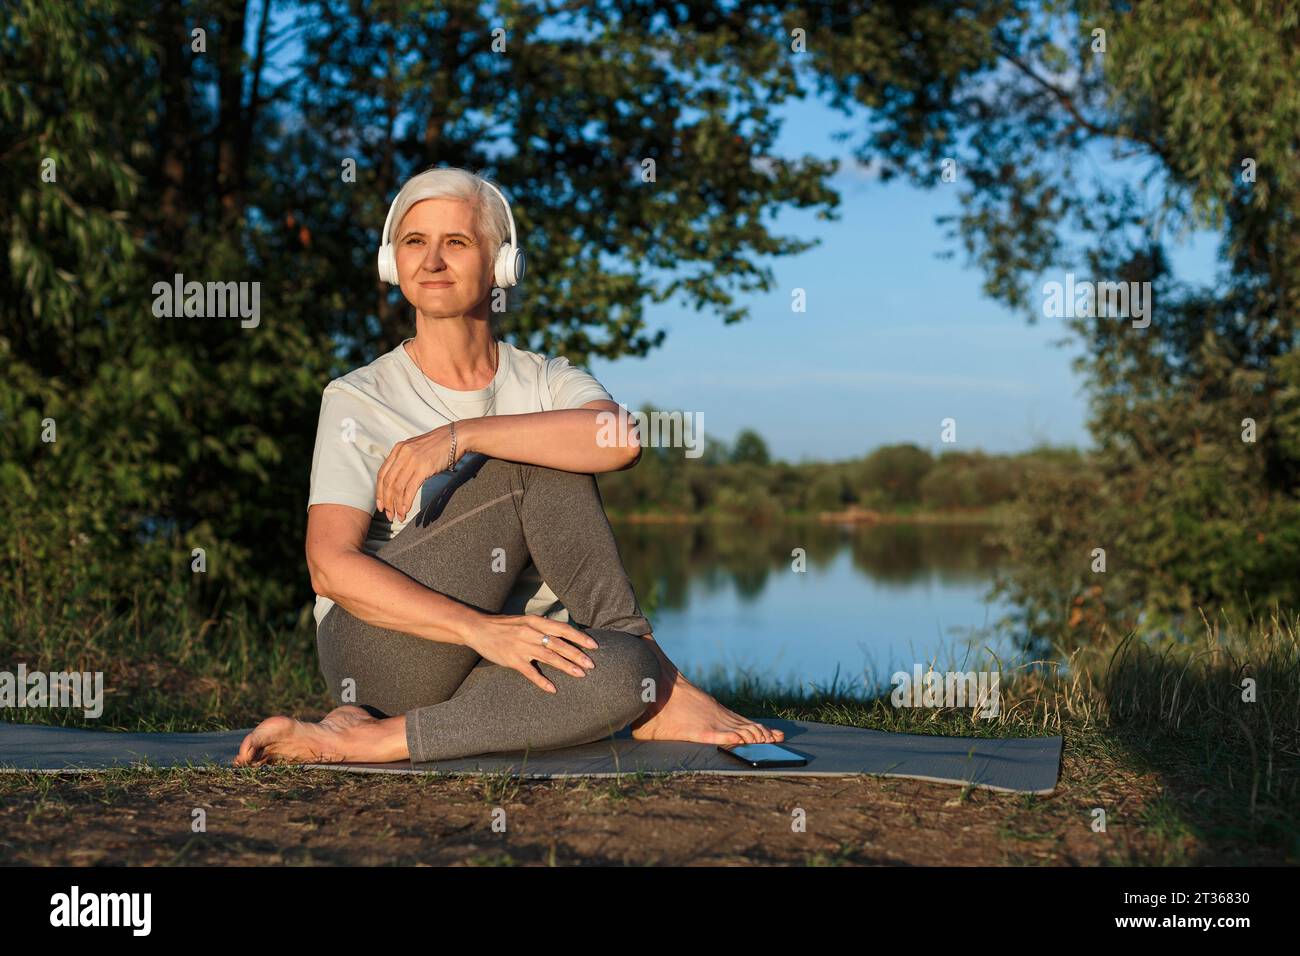 Reife Frau, die Musik hört und auf Yogamatte trainiert Stockfoto